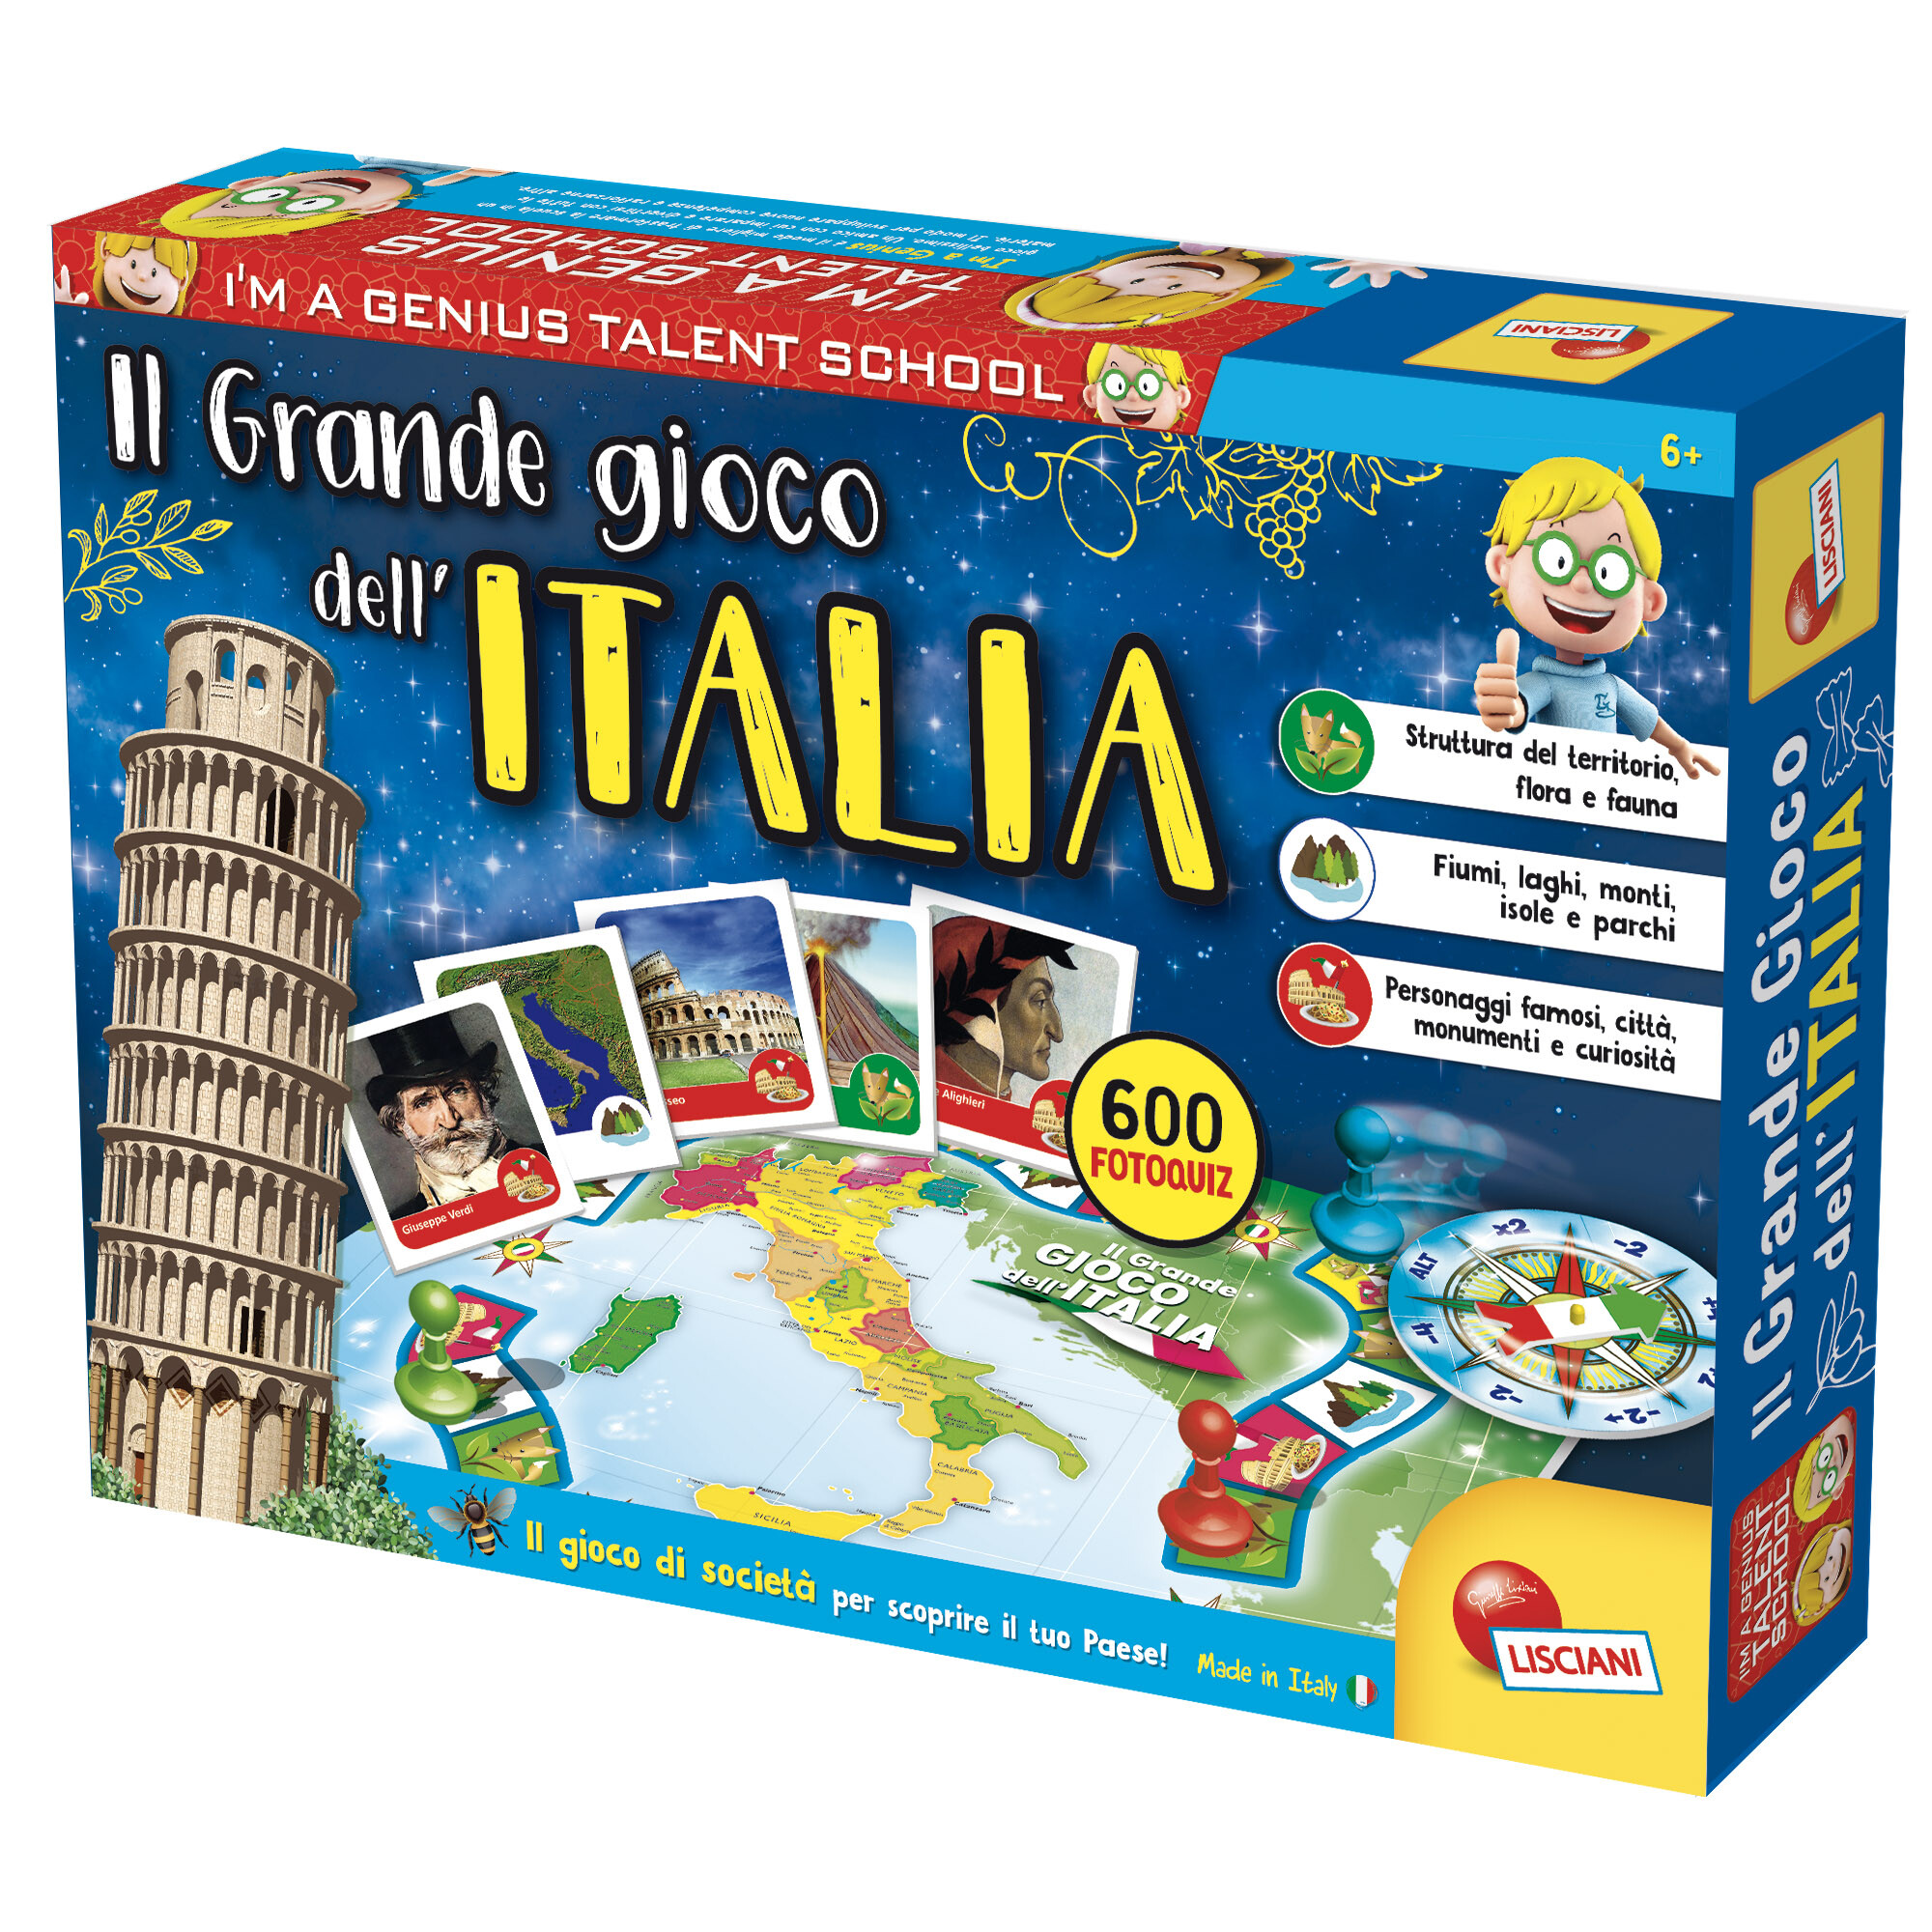 I'm a genius il grande gioco dell'italia - LISCIANI